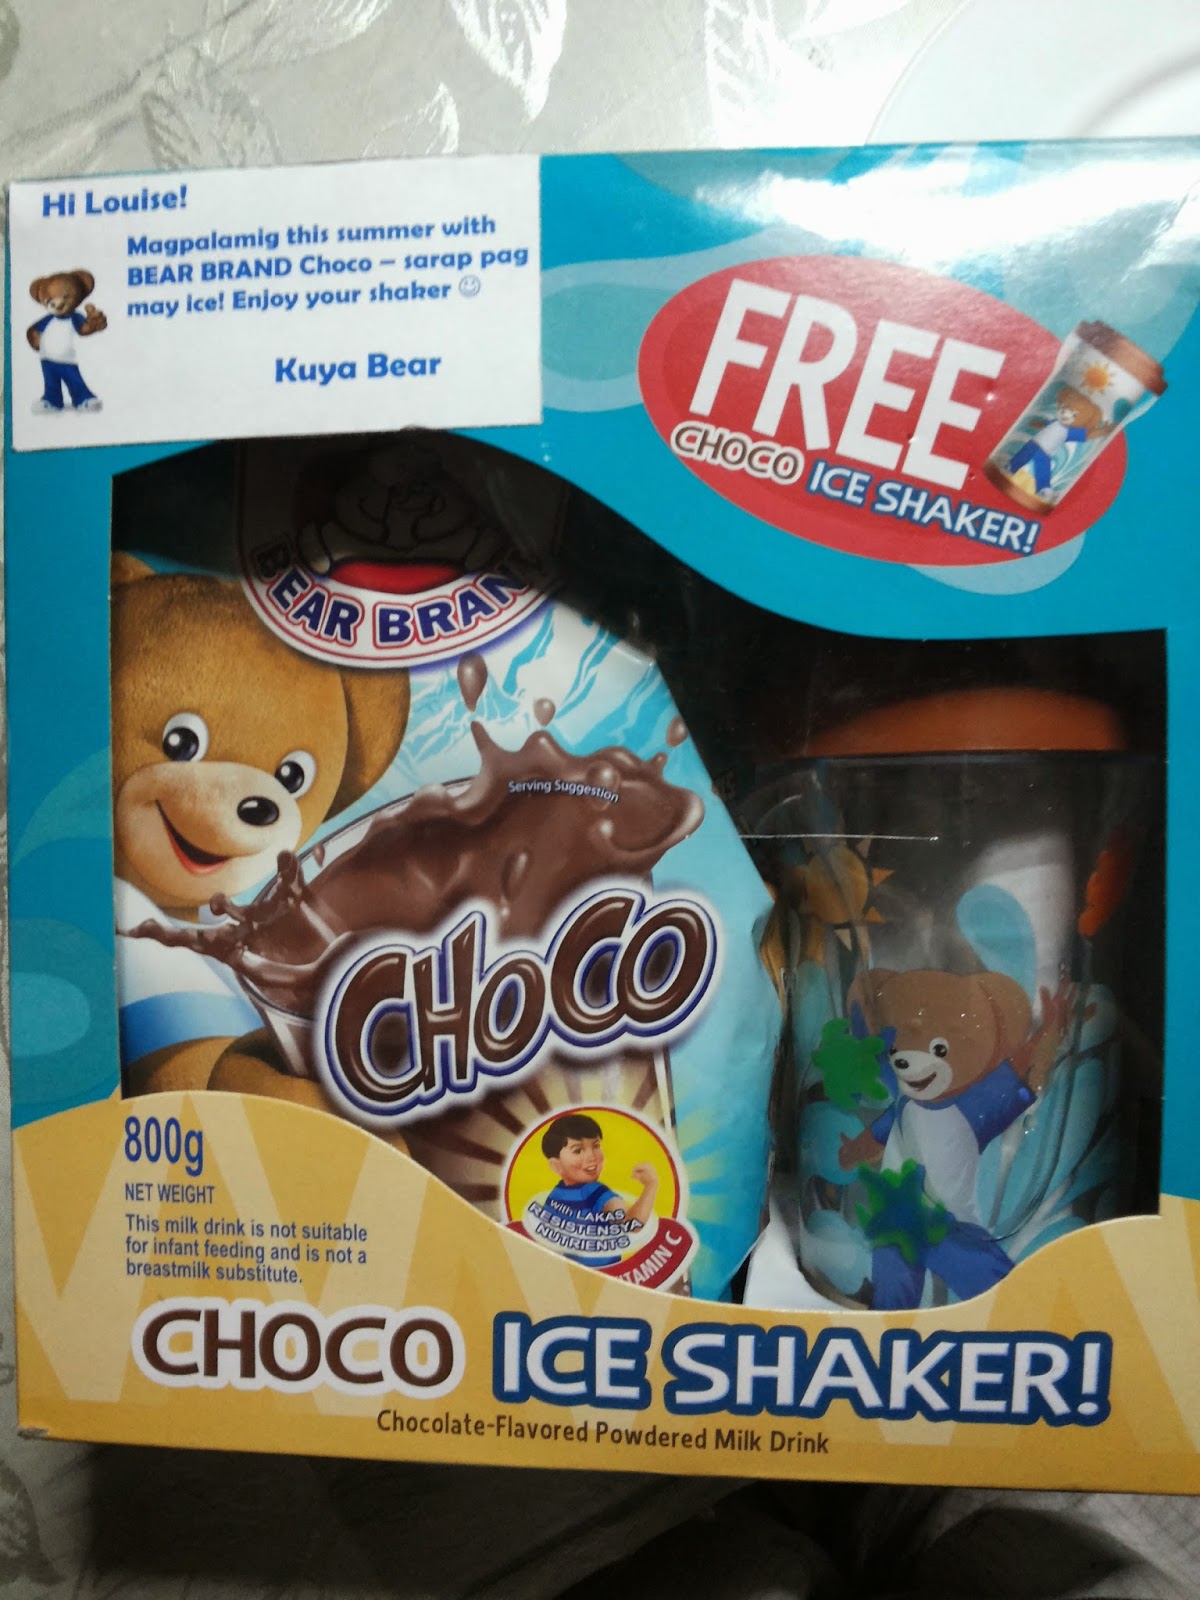 Bear Brand Choco With Ice